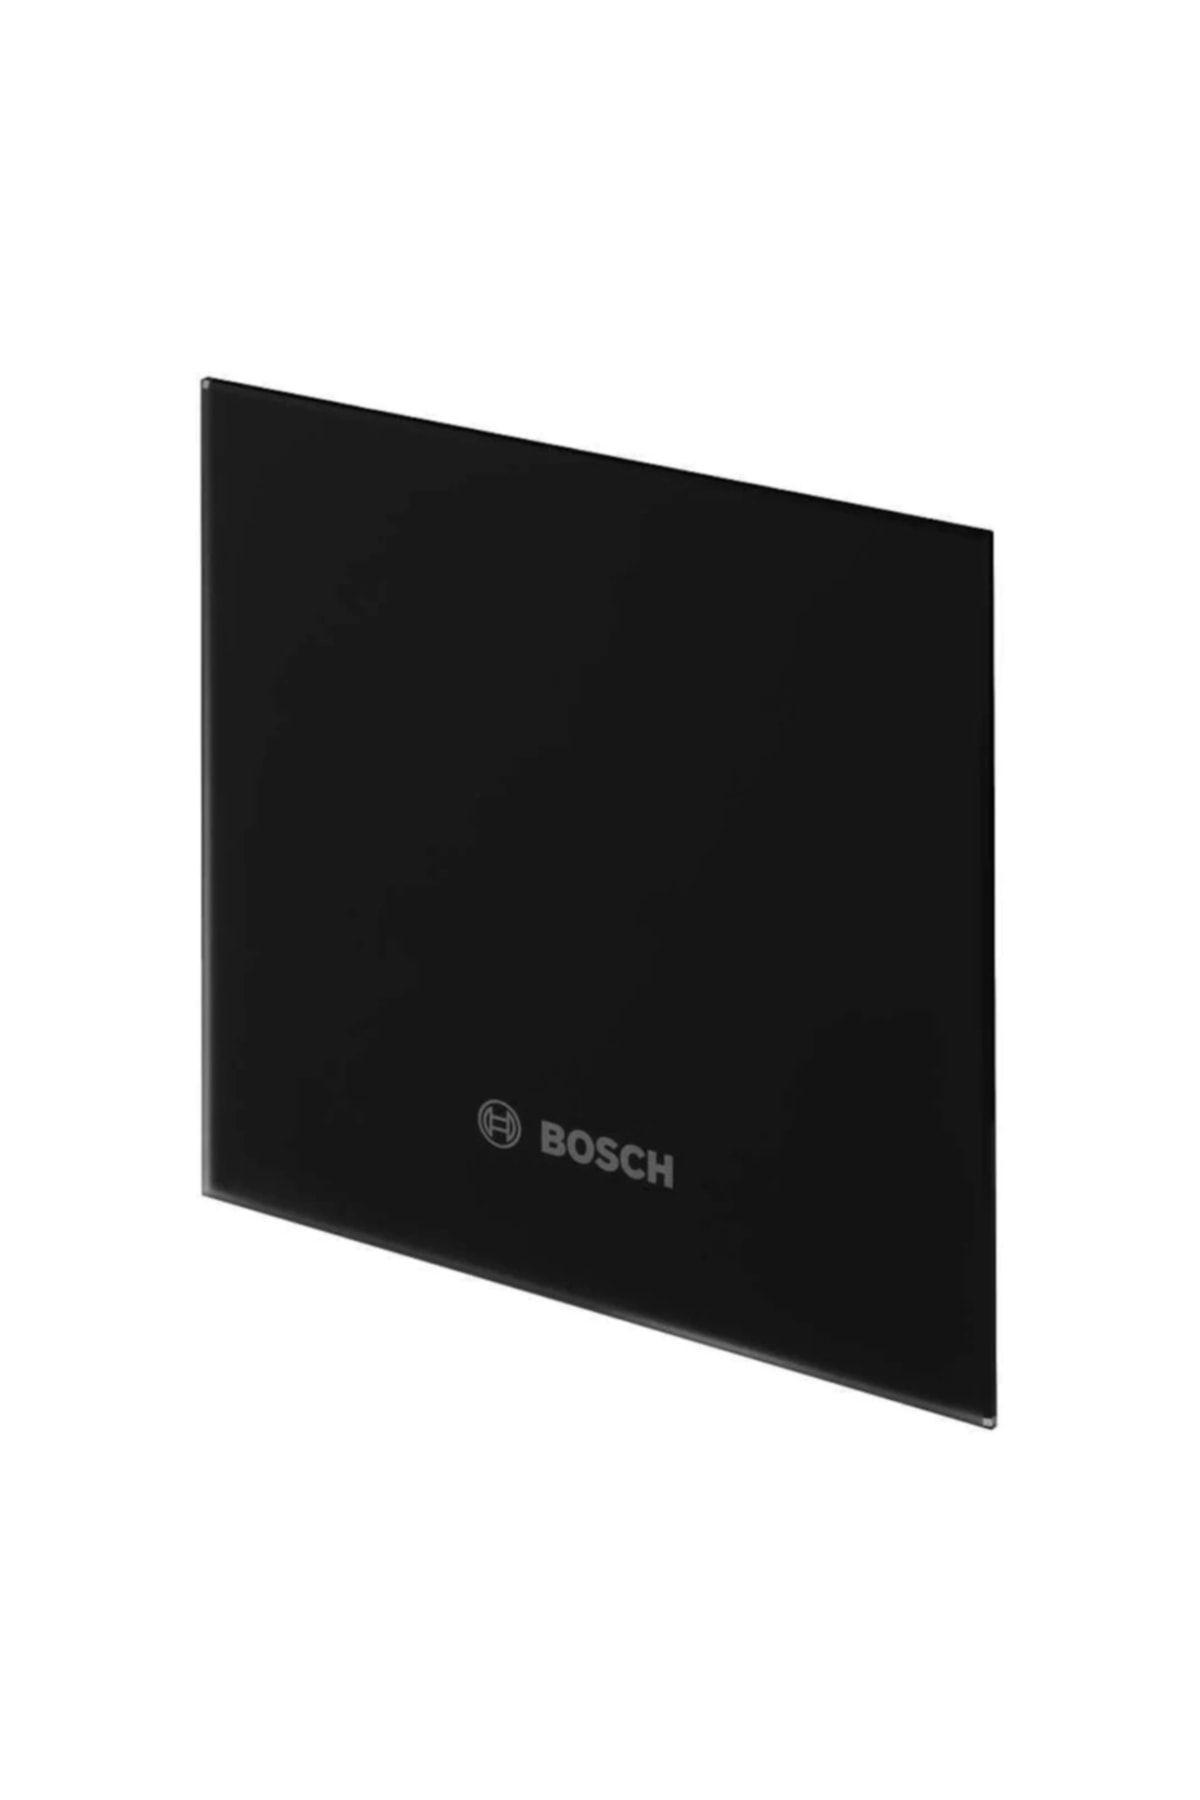 Bosch Dp125 Gb Parlak Siyah Cam Dekoratif Panel-f1700 Ws125 Serisi Aspiratör Içindir.sadece Kapaktır